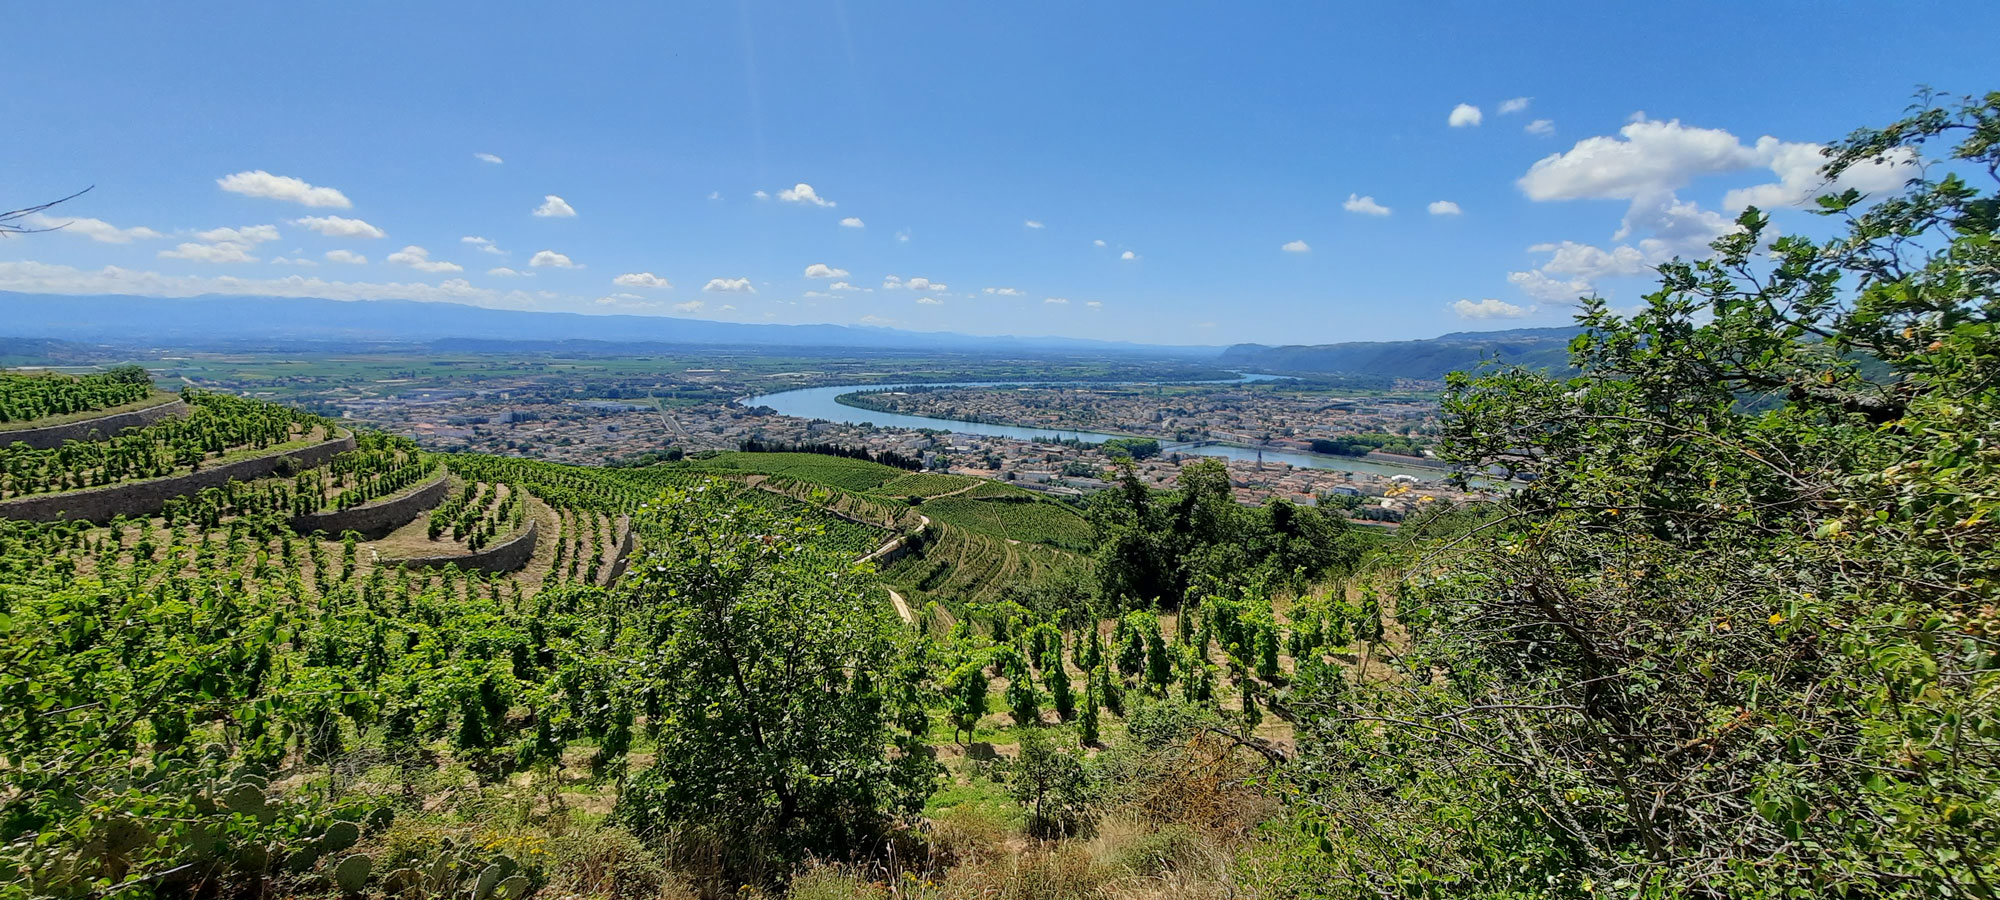 Prestigieux cru de la Vallée du Rhône septentrional, Crozes-Hermitage produit 90% de vins rouges - Crédit photo : @ Romy Ducoulombier